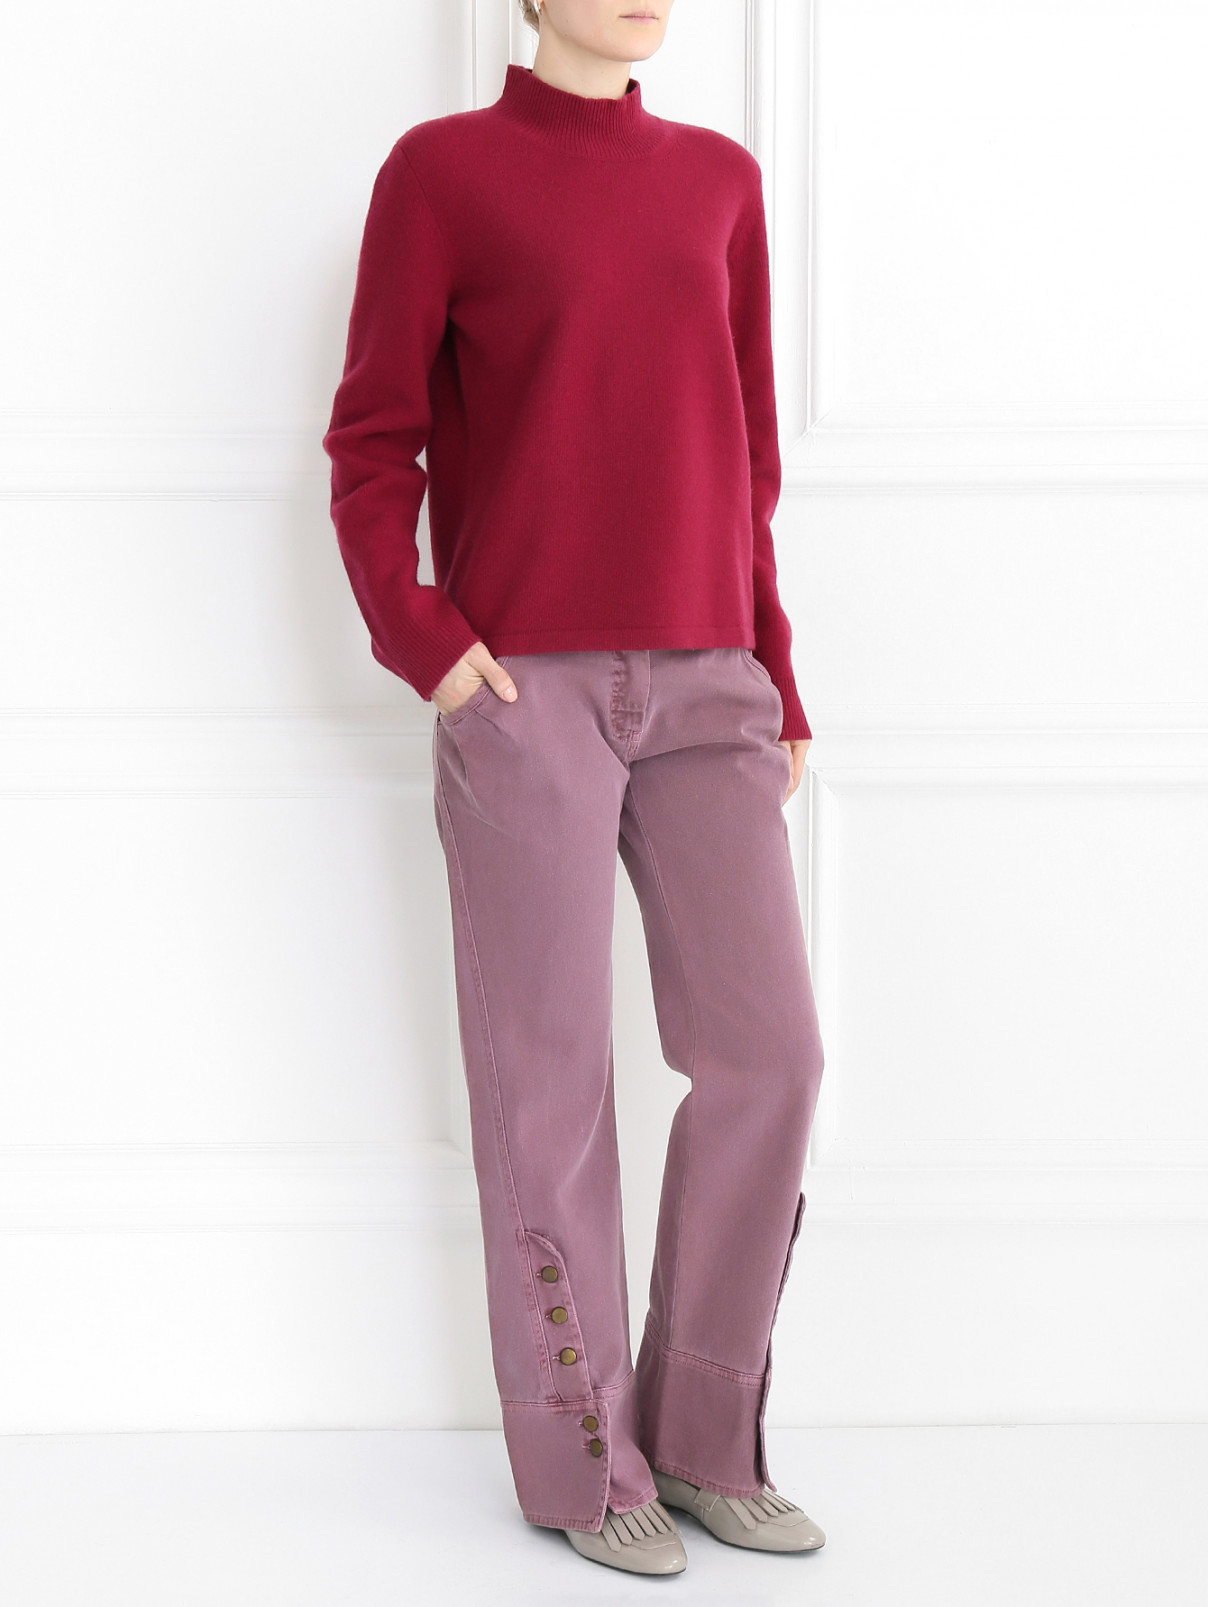 Джинсы с драпировкой на карманах Mariella Burani  –  Модель Общий вид  – Цвет:  Розовый